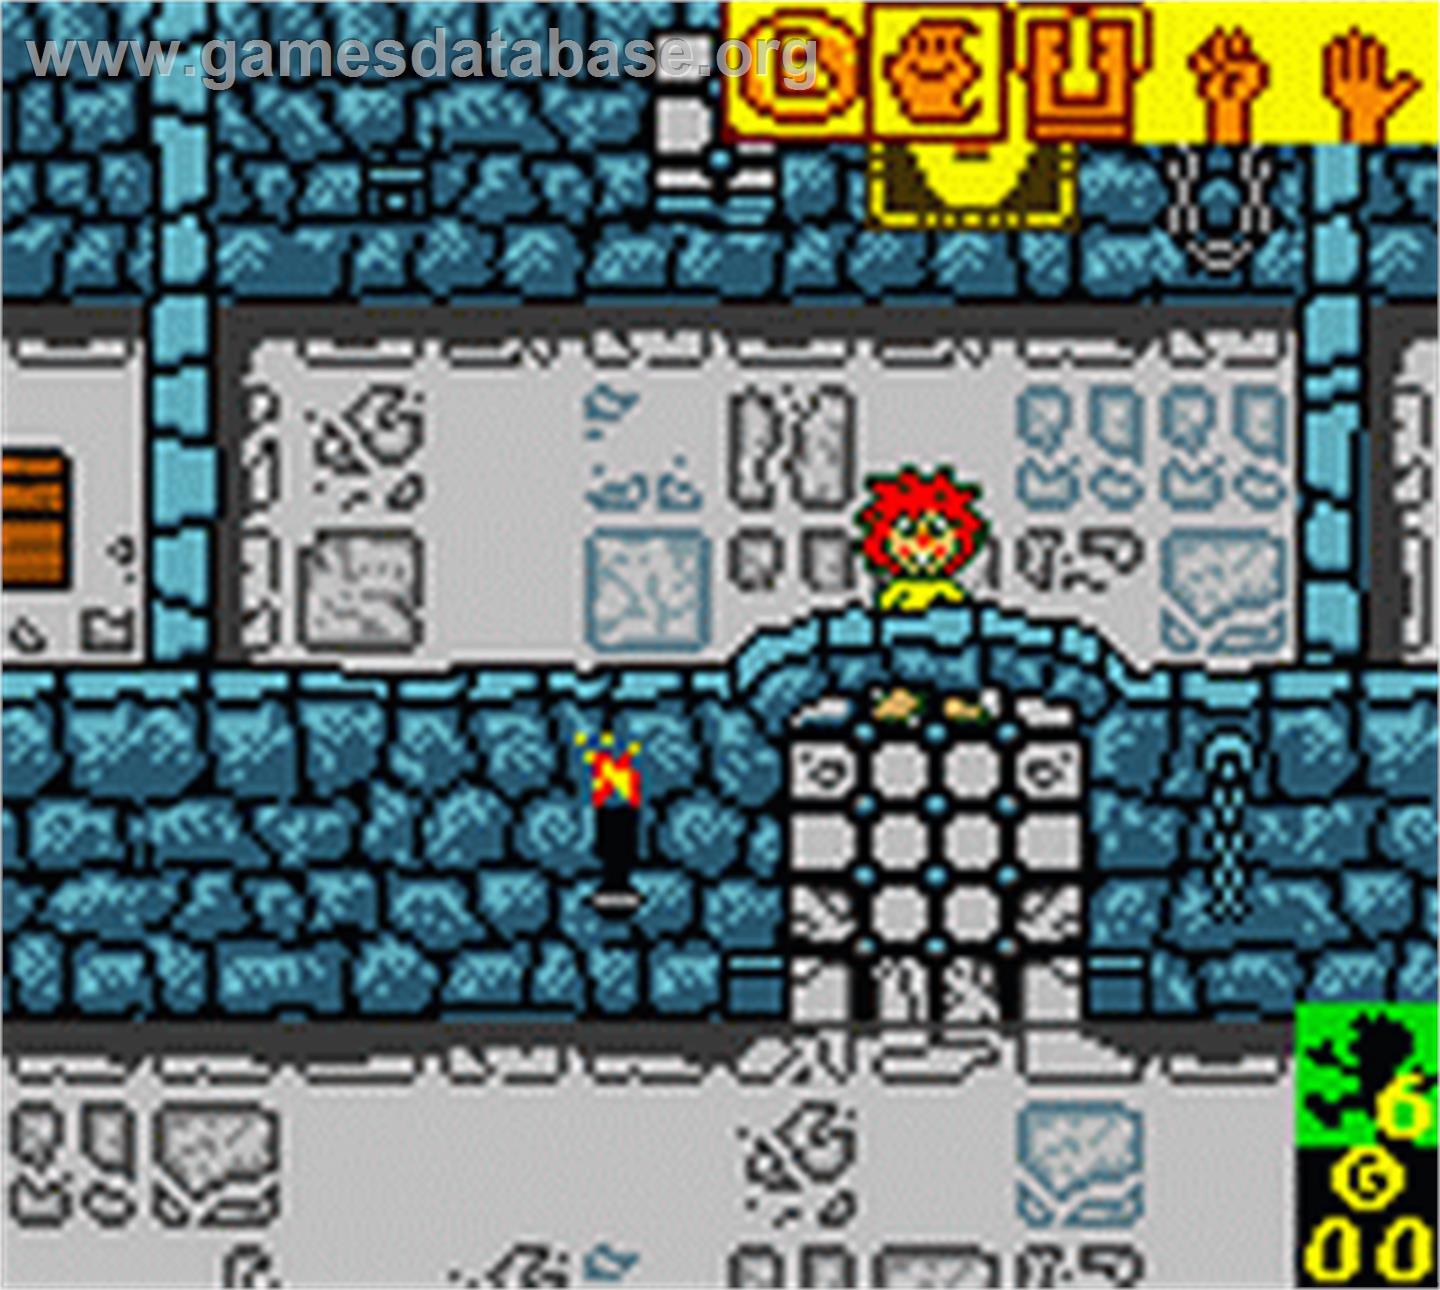 Pumuckls Abenteuer im Geisterschloss - Nintendo Game Boy Color - Artwork - In Game